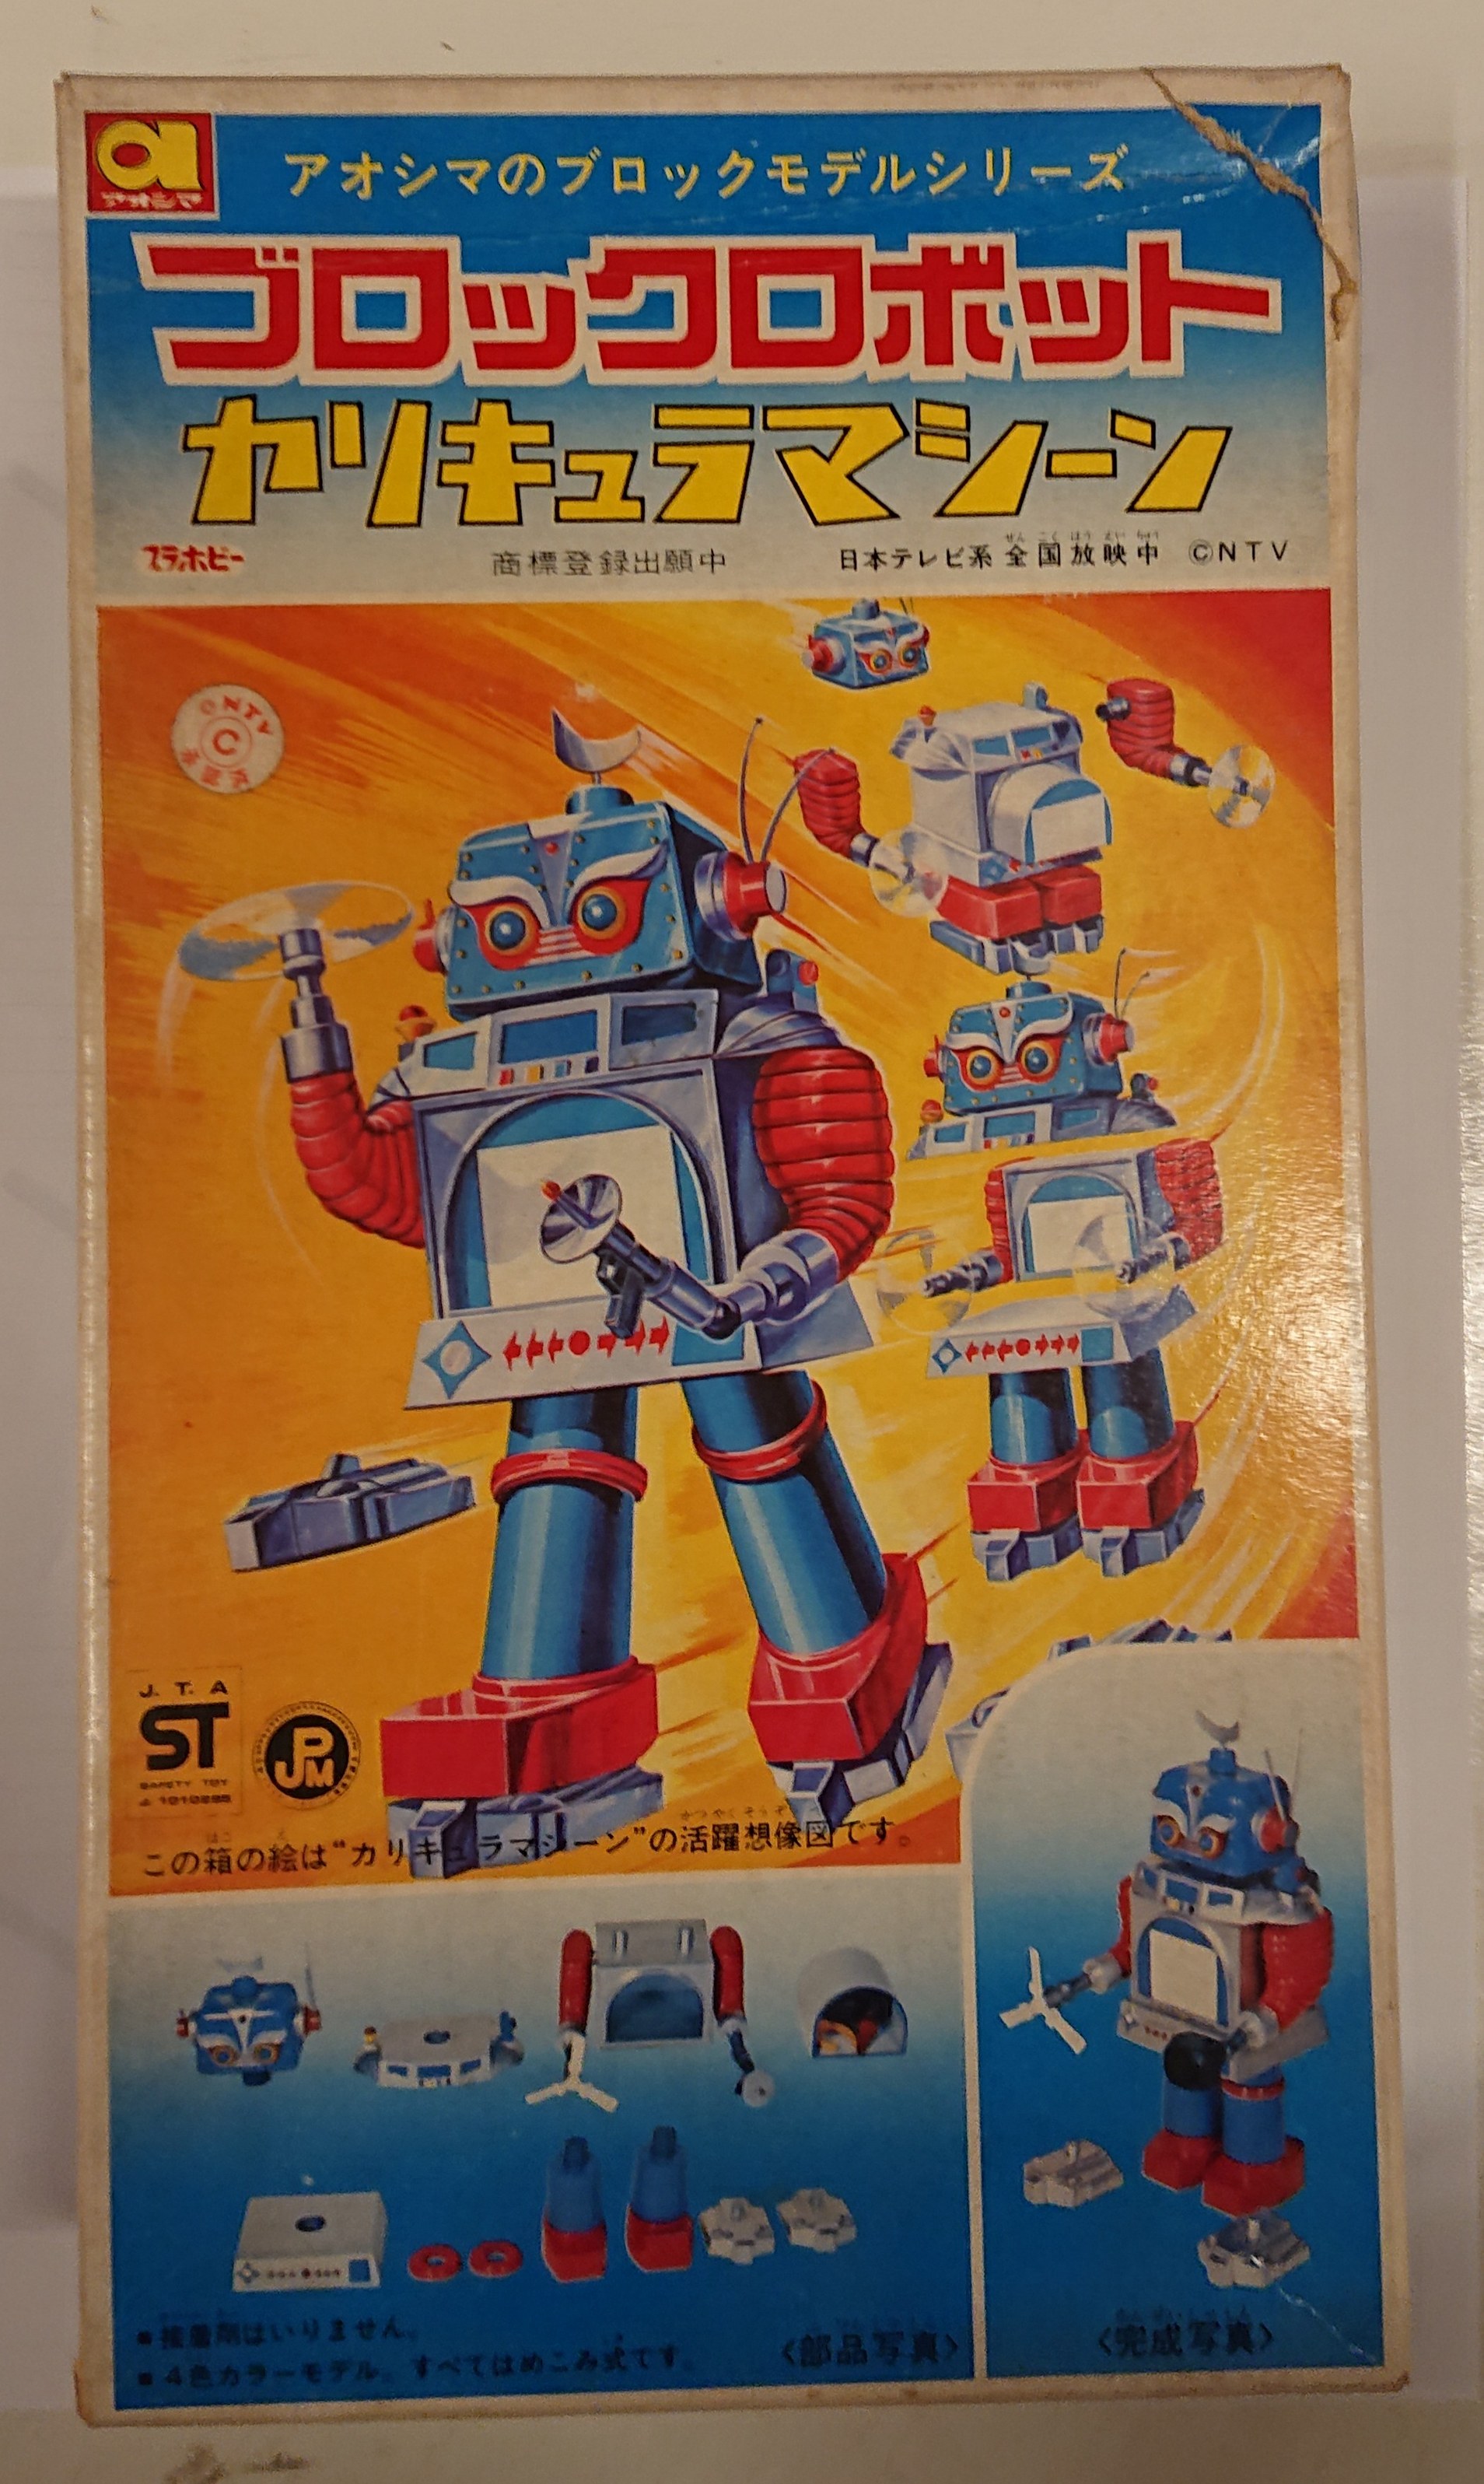 アオシマ ブロックロボット カリキュラマシーン定価500円版